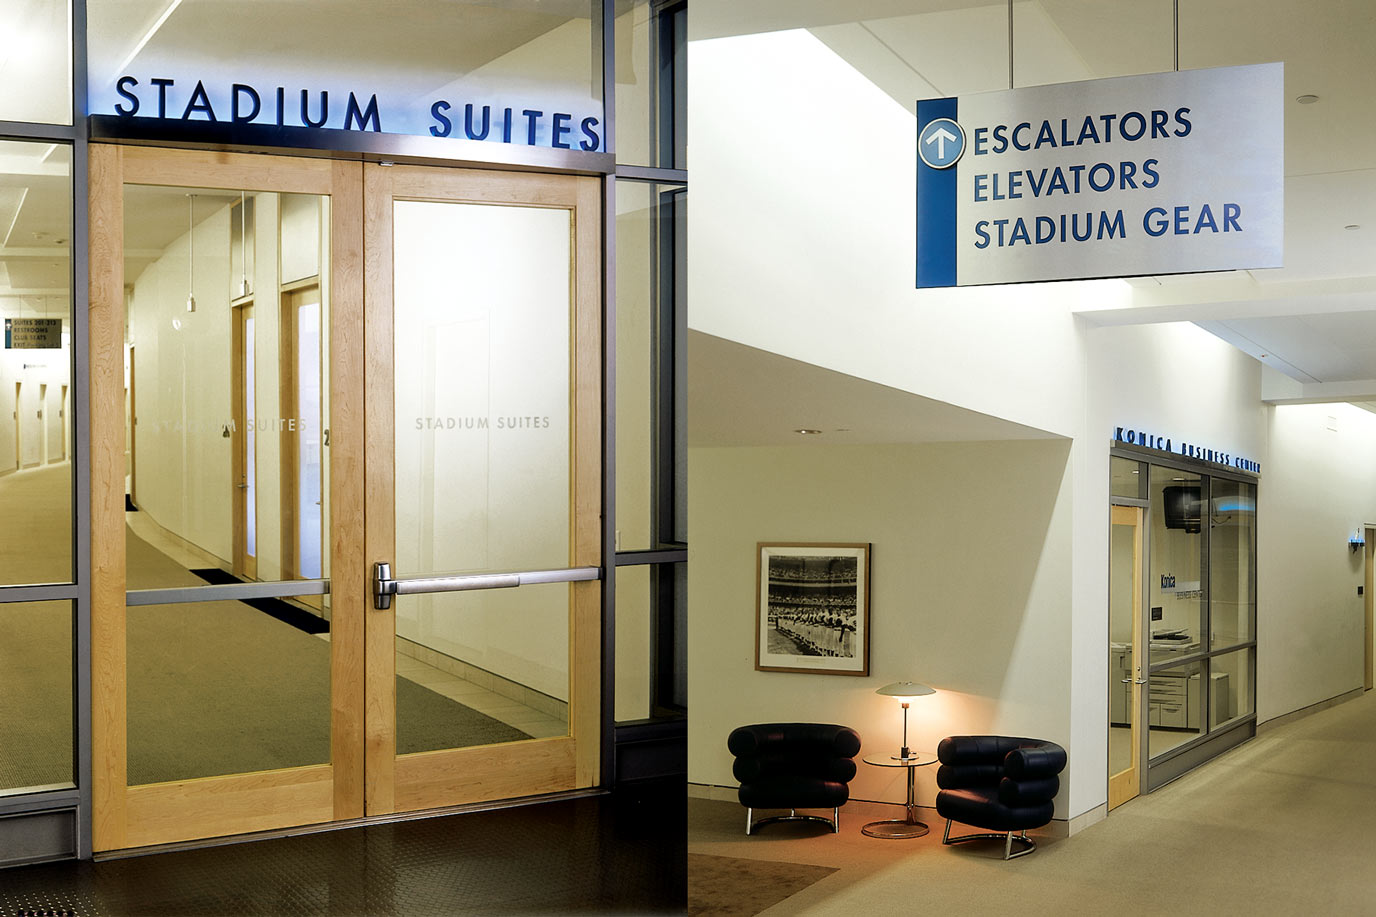 Dodgers Stadium Suite and interior signage